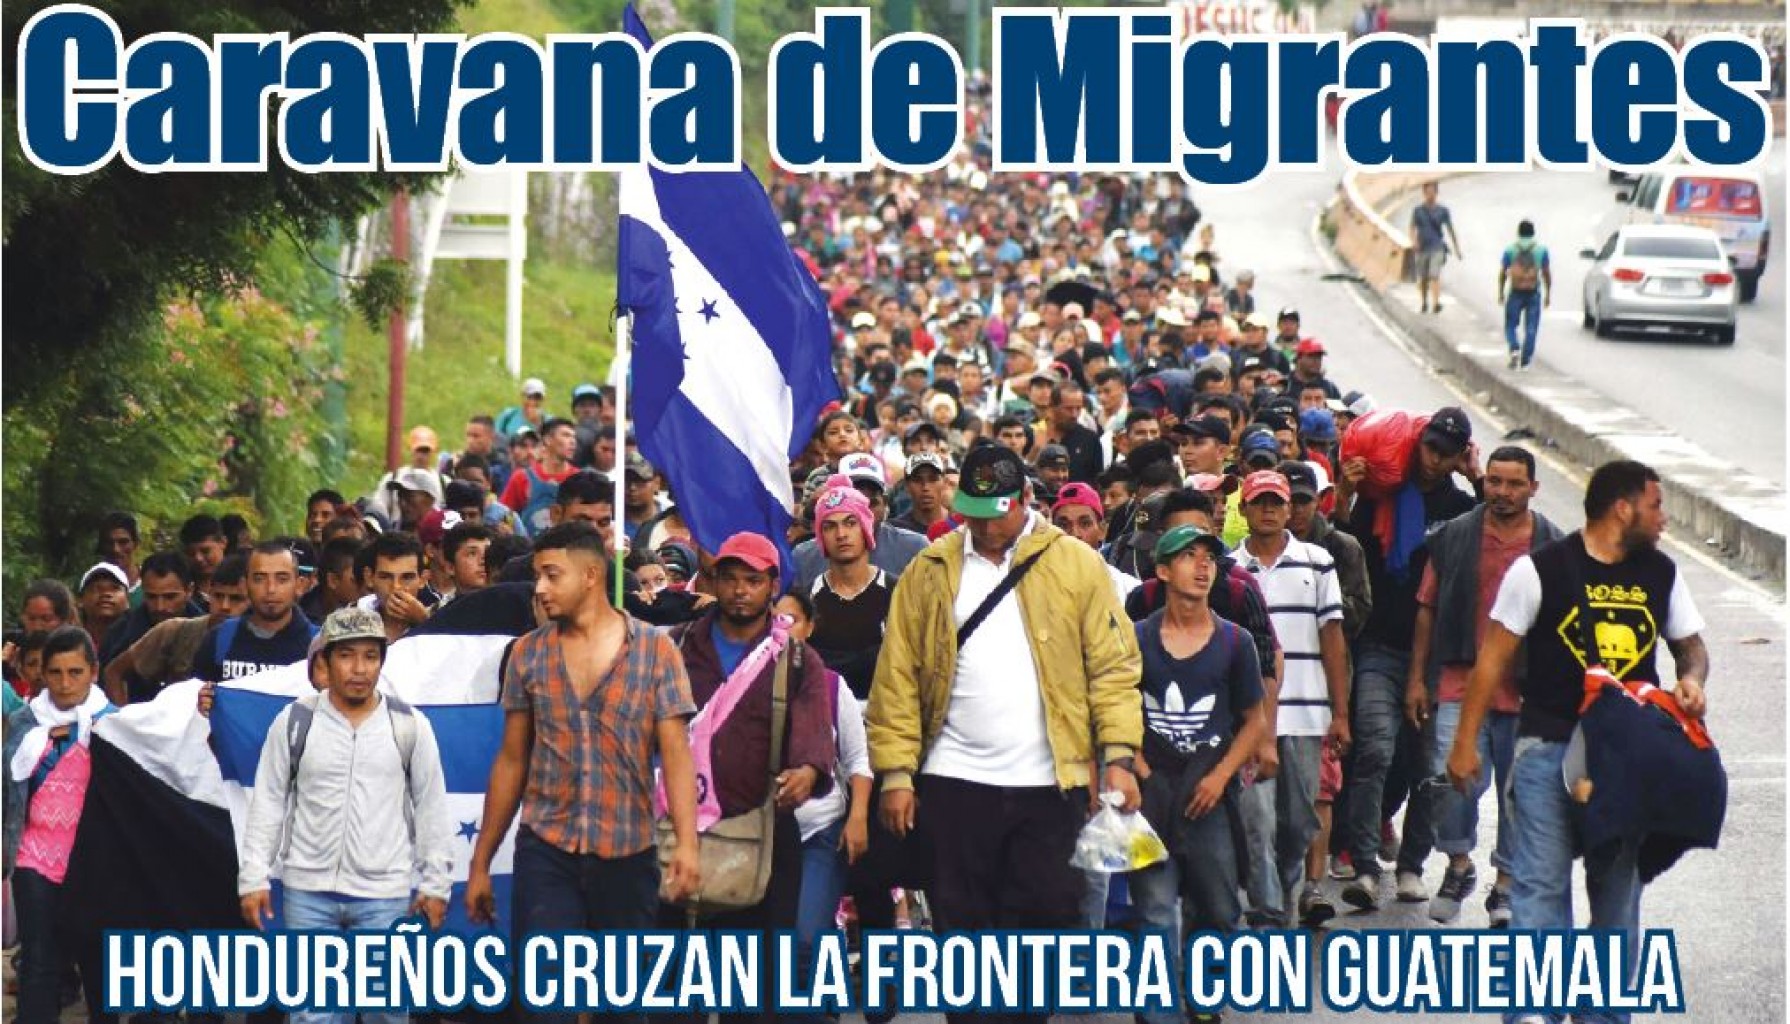 Caravana de Migrantes Hondureños cruza la frontera con Guatemala